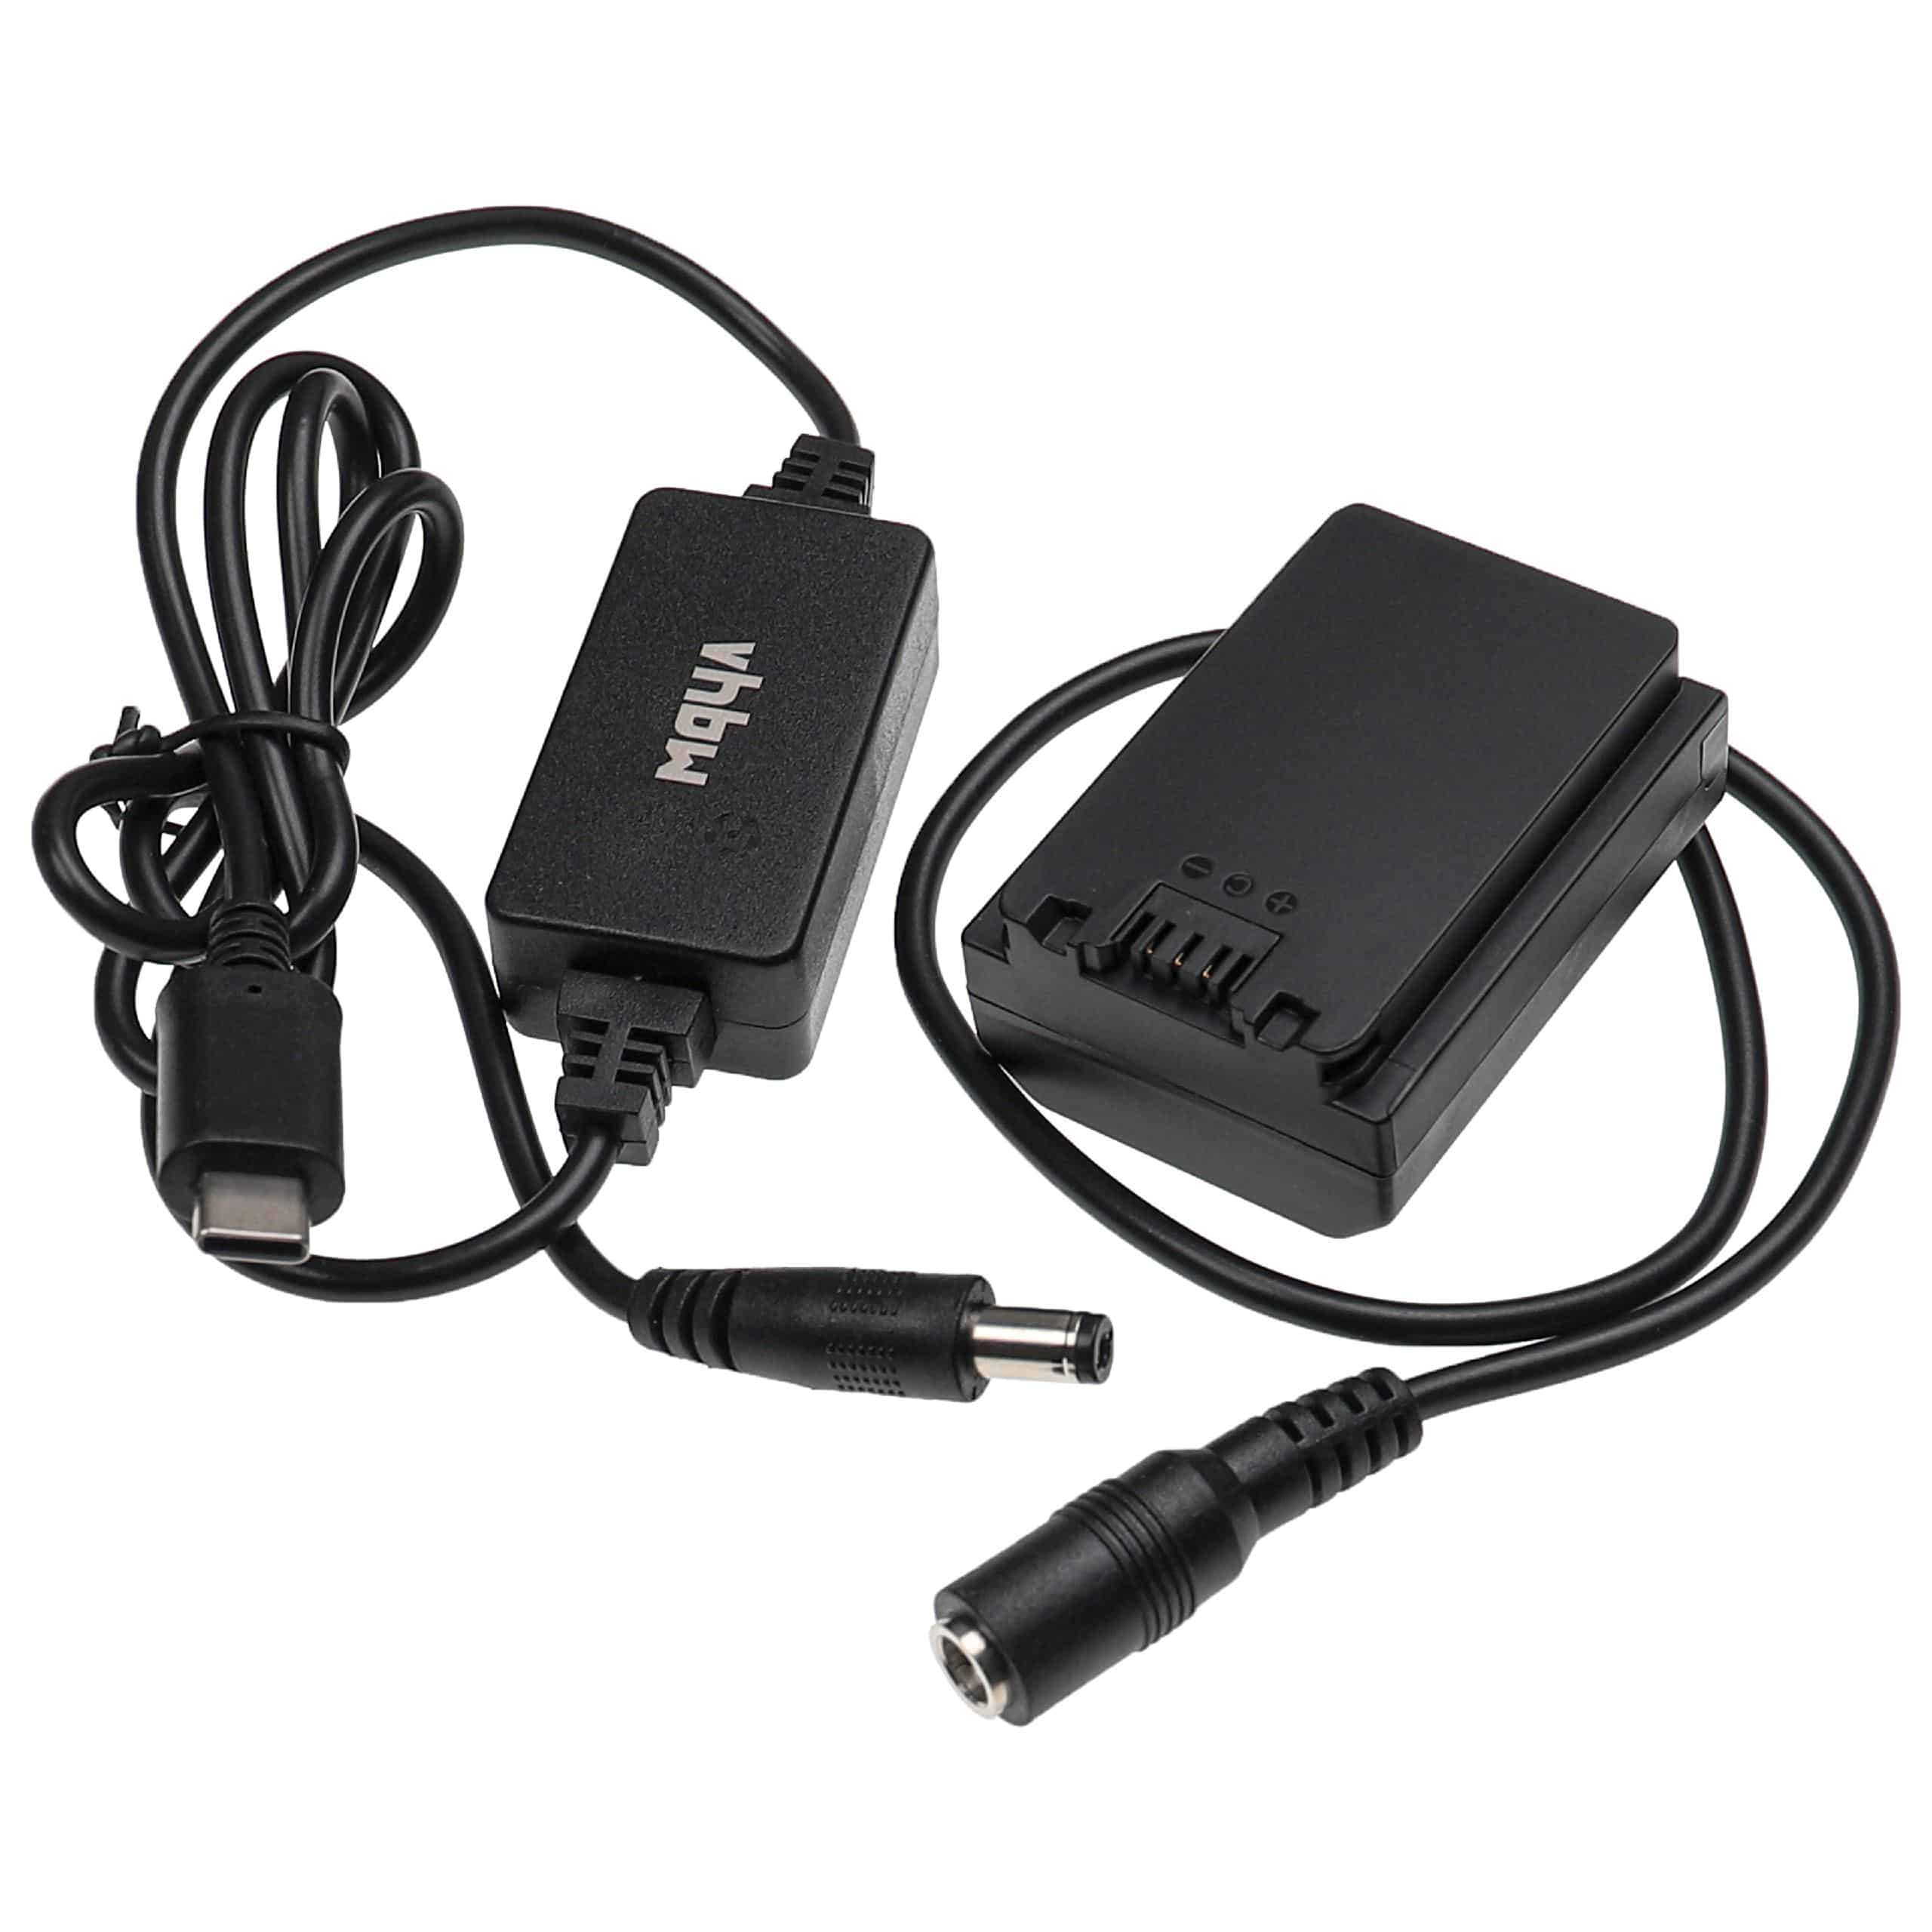 Zasilacz USB do aparatu zam. AC-FZ100 + adapter zam. Sony NP-FZ100 - 2 m, 8,4 V 3,0 A